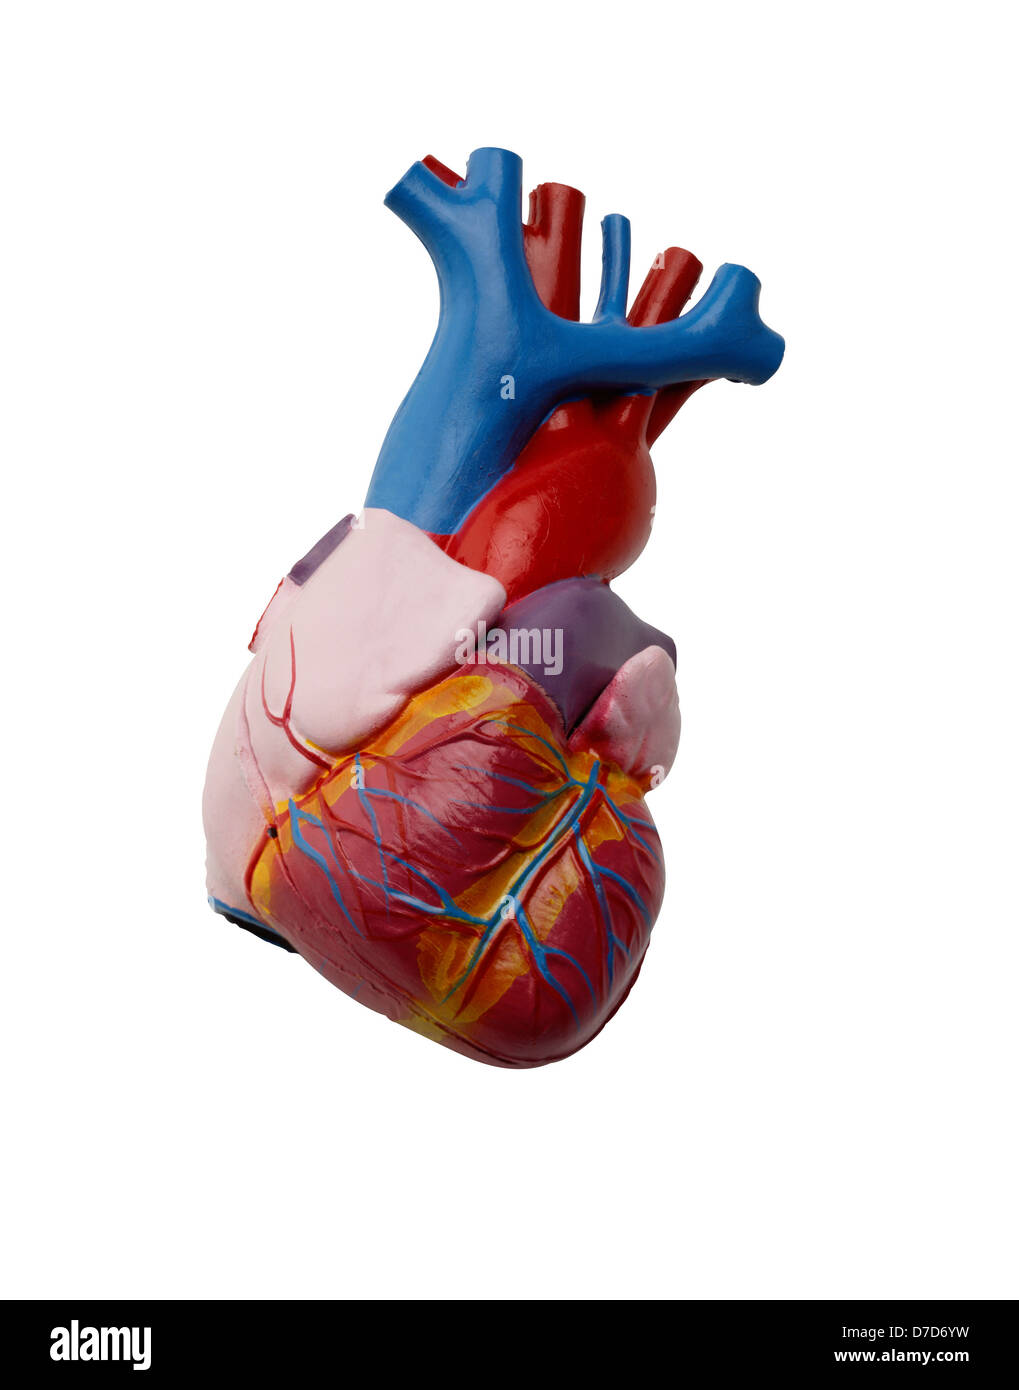 Modèle anatomique en plastique du cœur humain, on white Banque D'Images